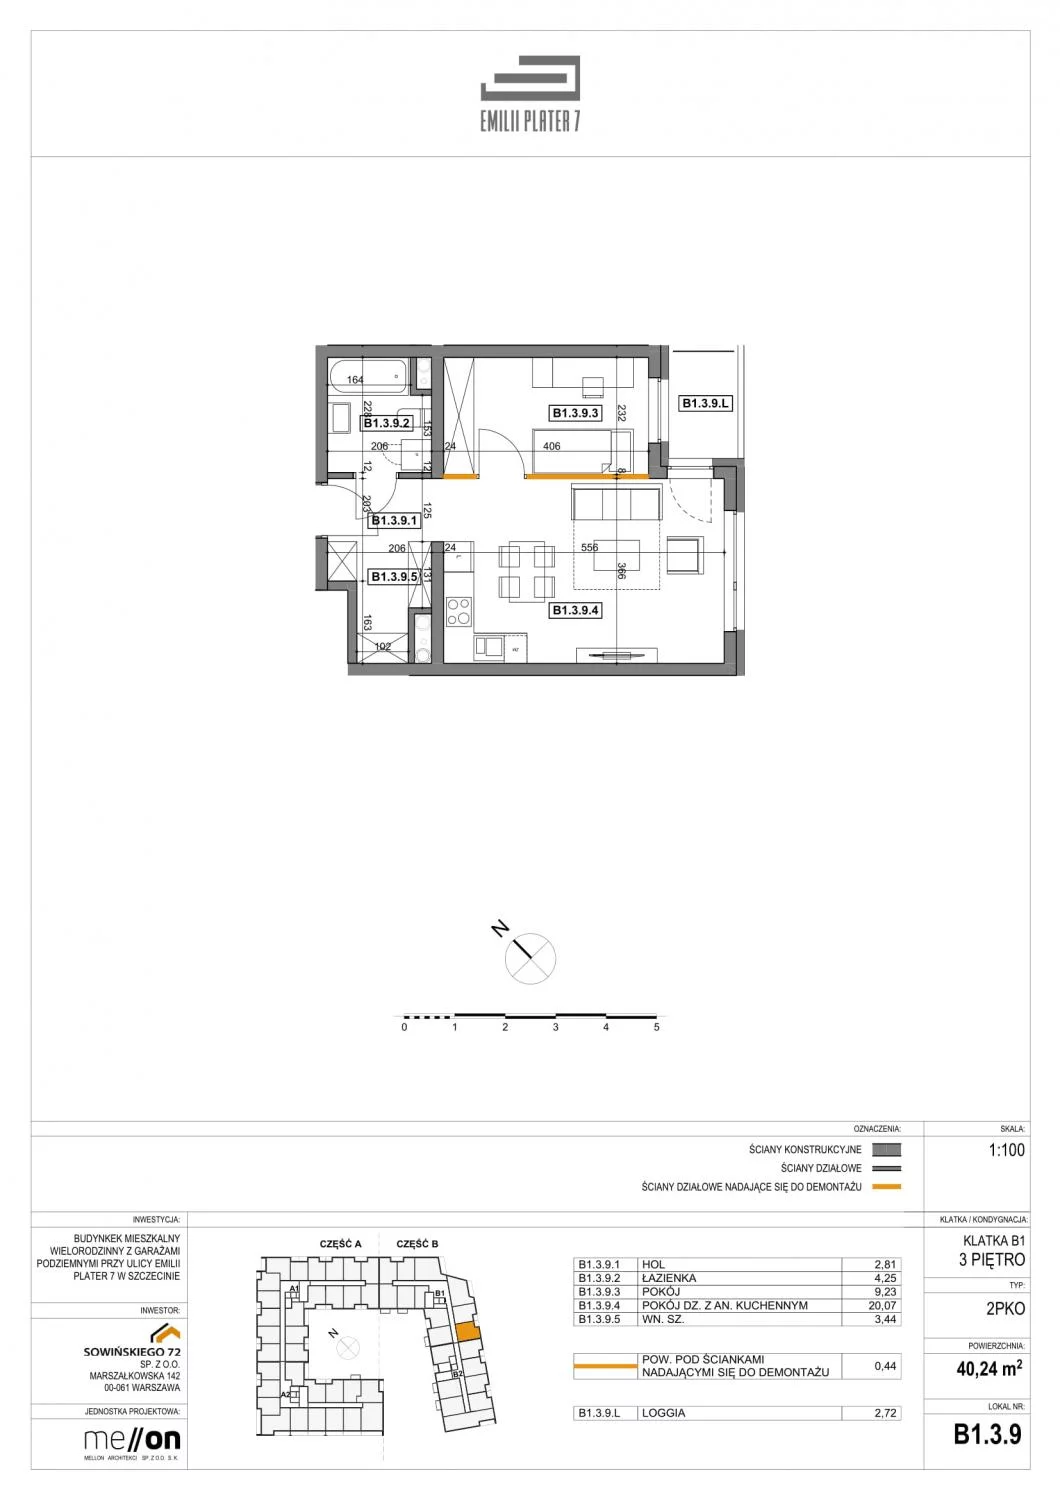 Apartament 40,24 m², piętro 3, oferta nr B1.3.9, Emilii Plater 7, Szczecin, Północ, Drzetowo-Grabowo, ul. Emilii Plater 7